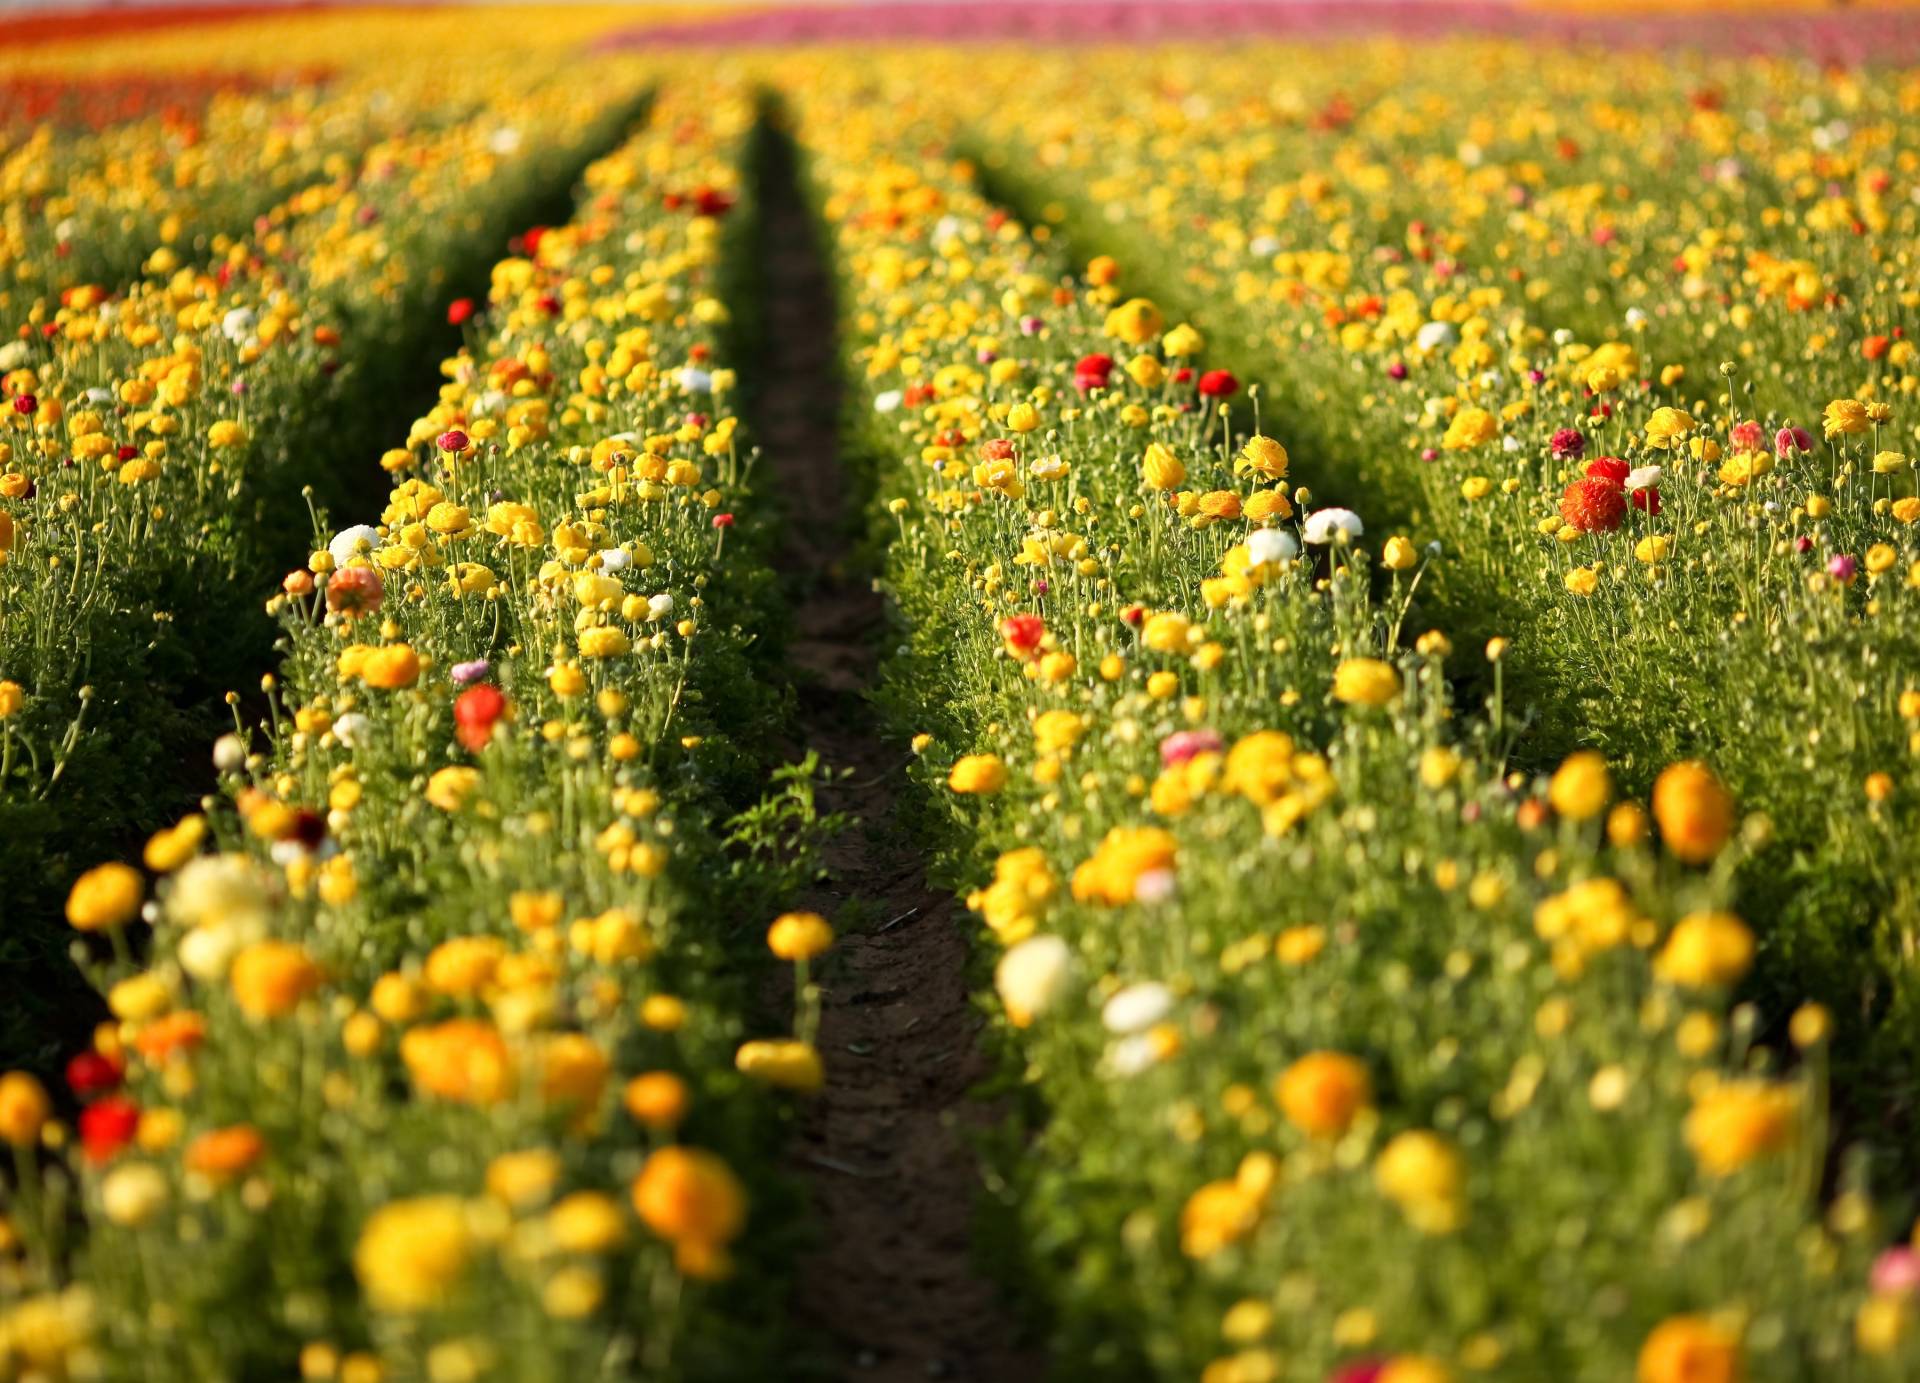 Papermoon Fototapete "Flower Field in San Diego" von Papermoon